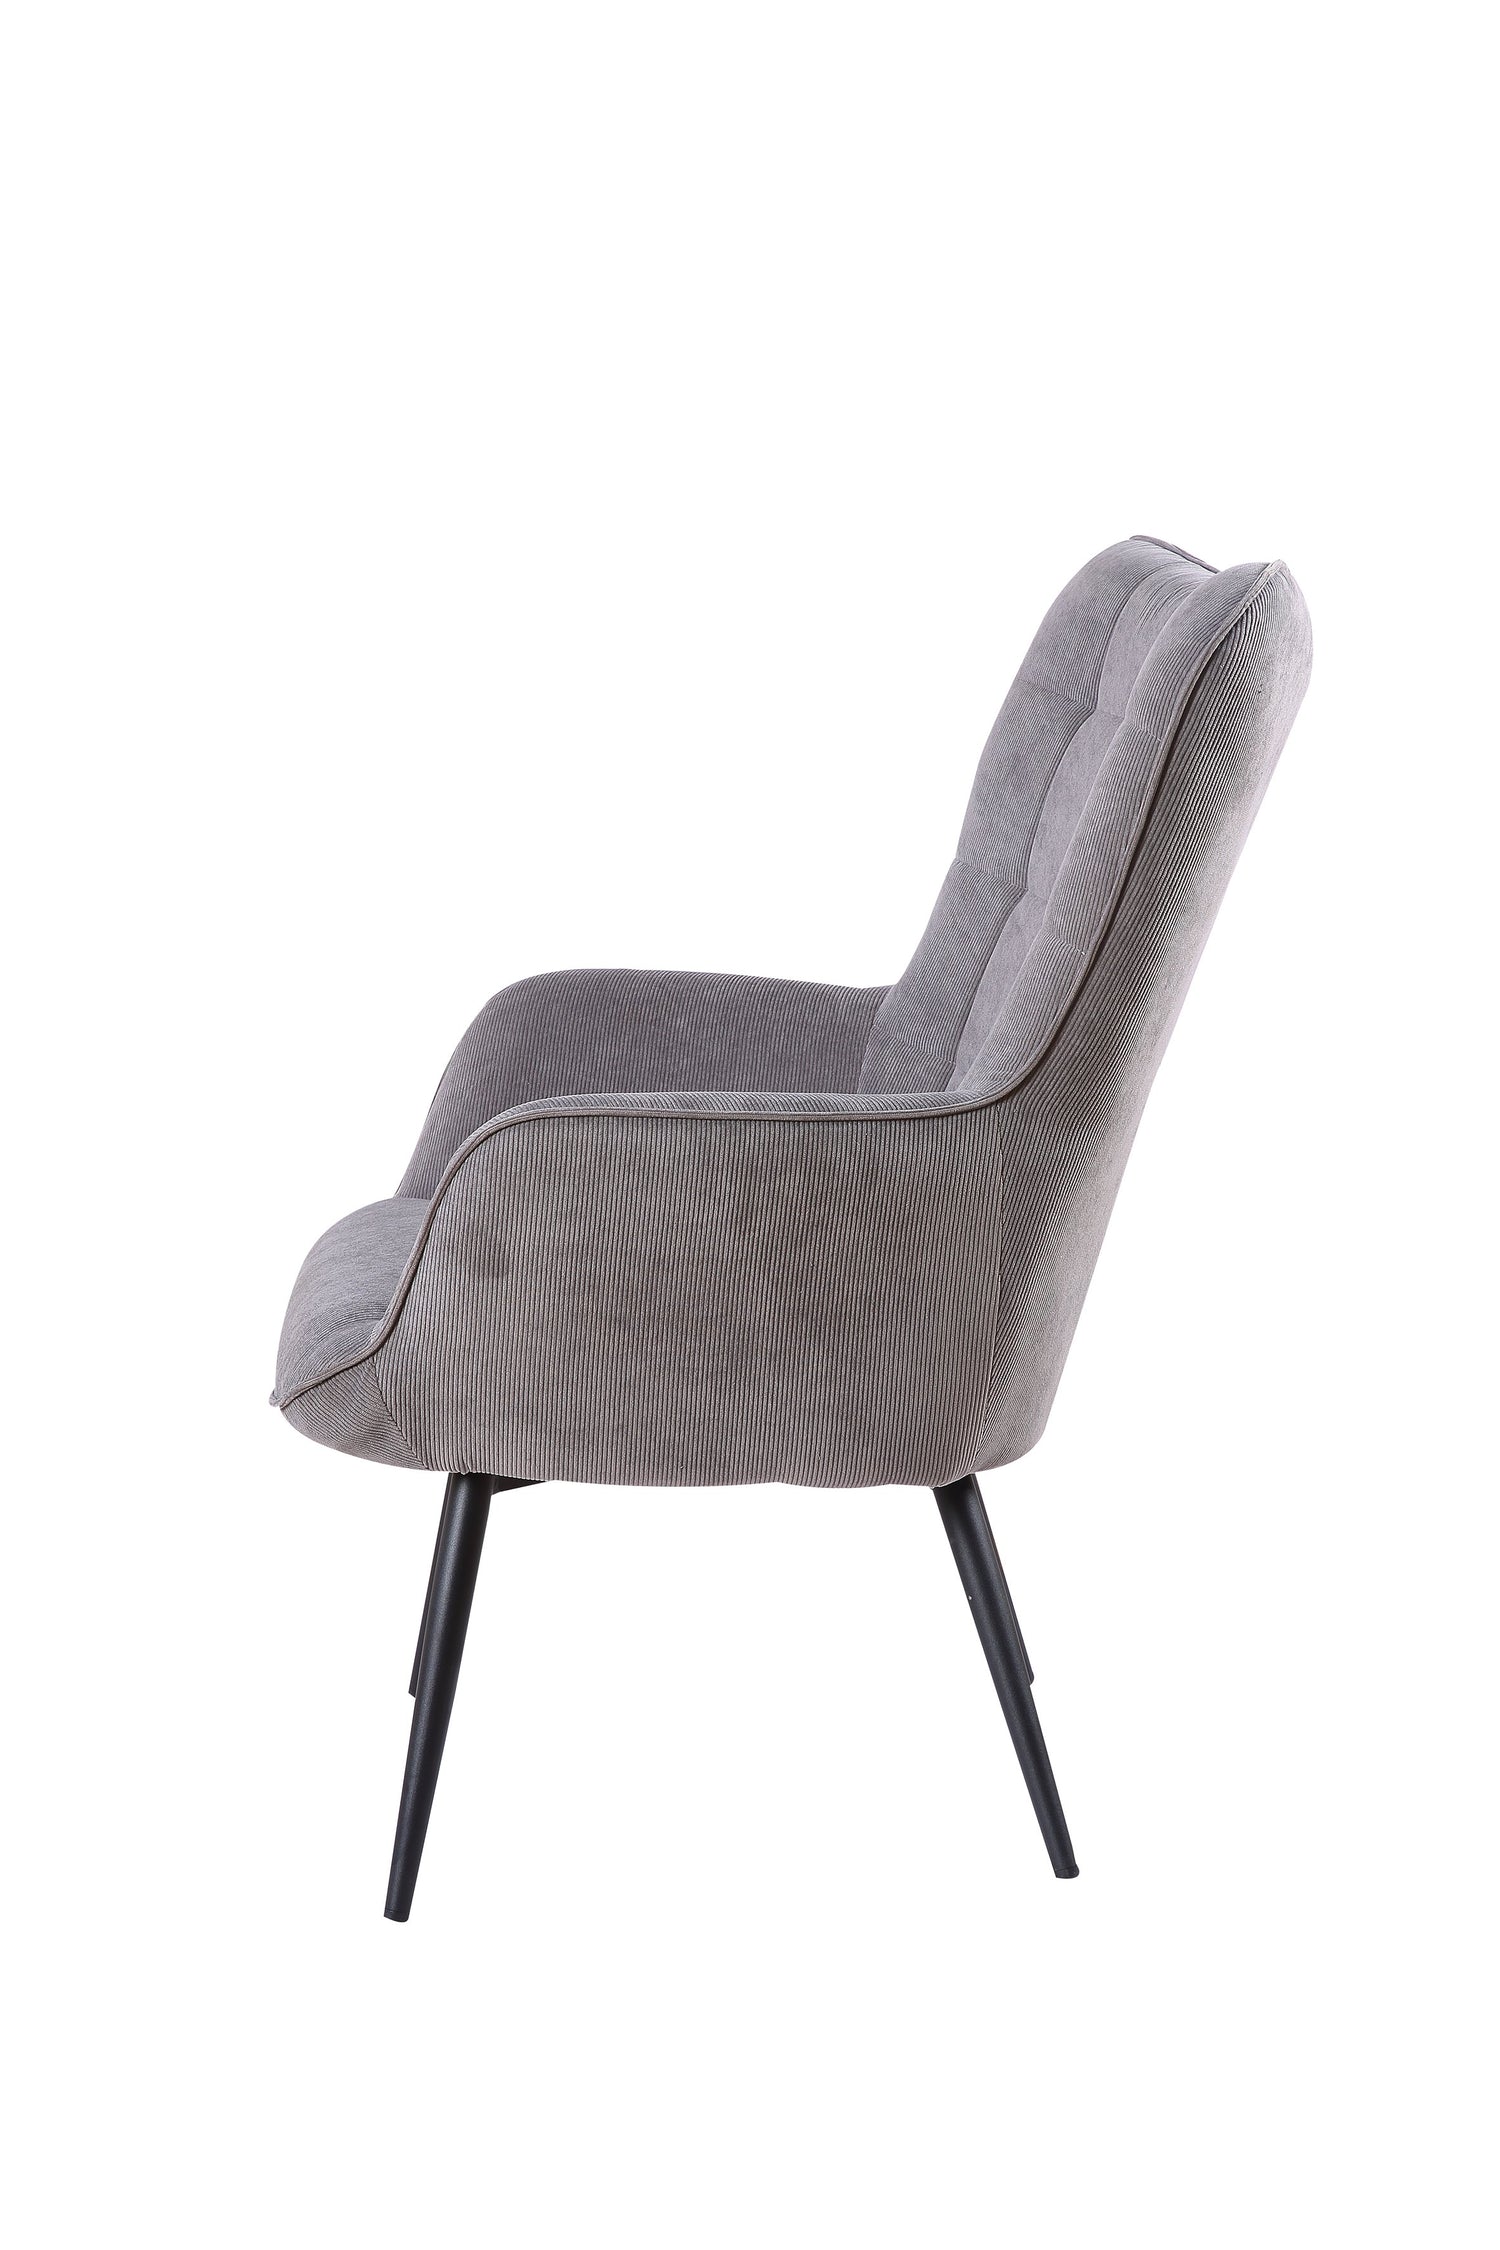 UTA Sessel, Gestell in schwarz, in schwarz, grau, sandfarben oder grün –  byLIVING